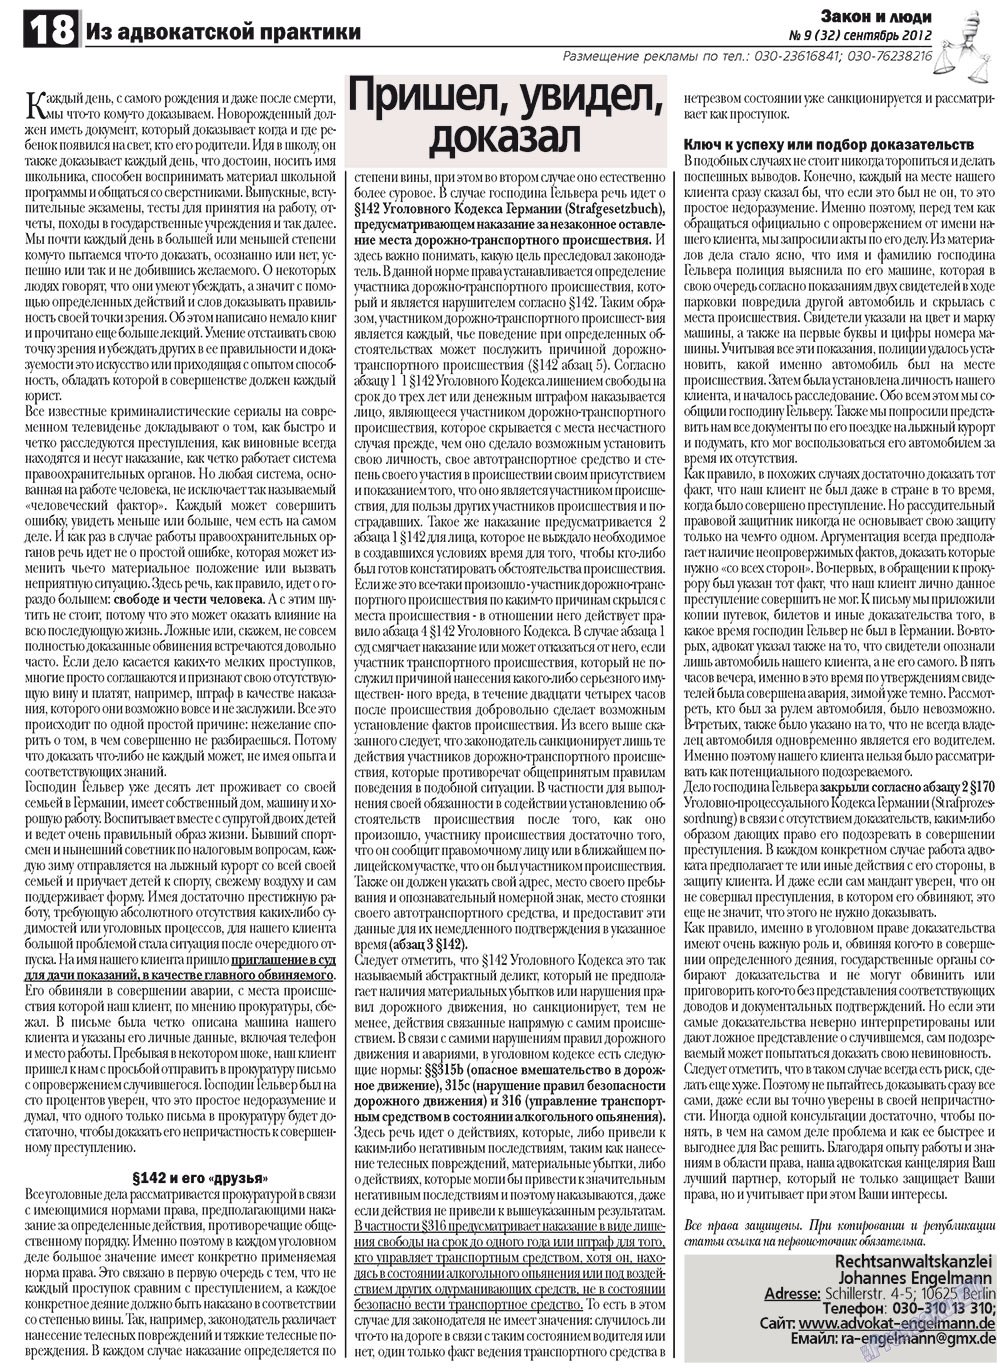 Закон и люди (газета). 2012 год, номер 9, стр. 18